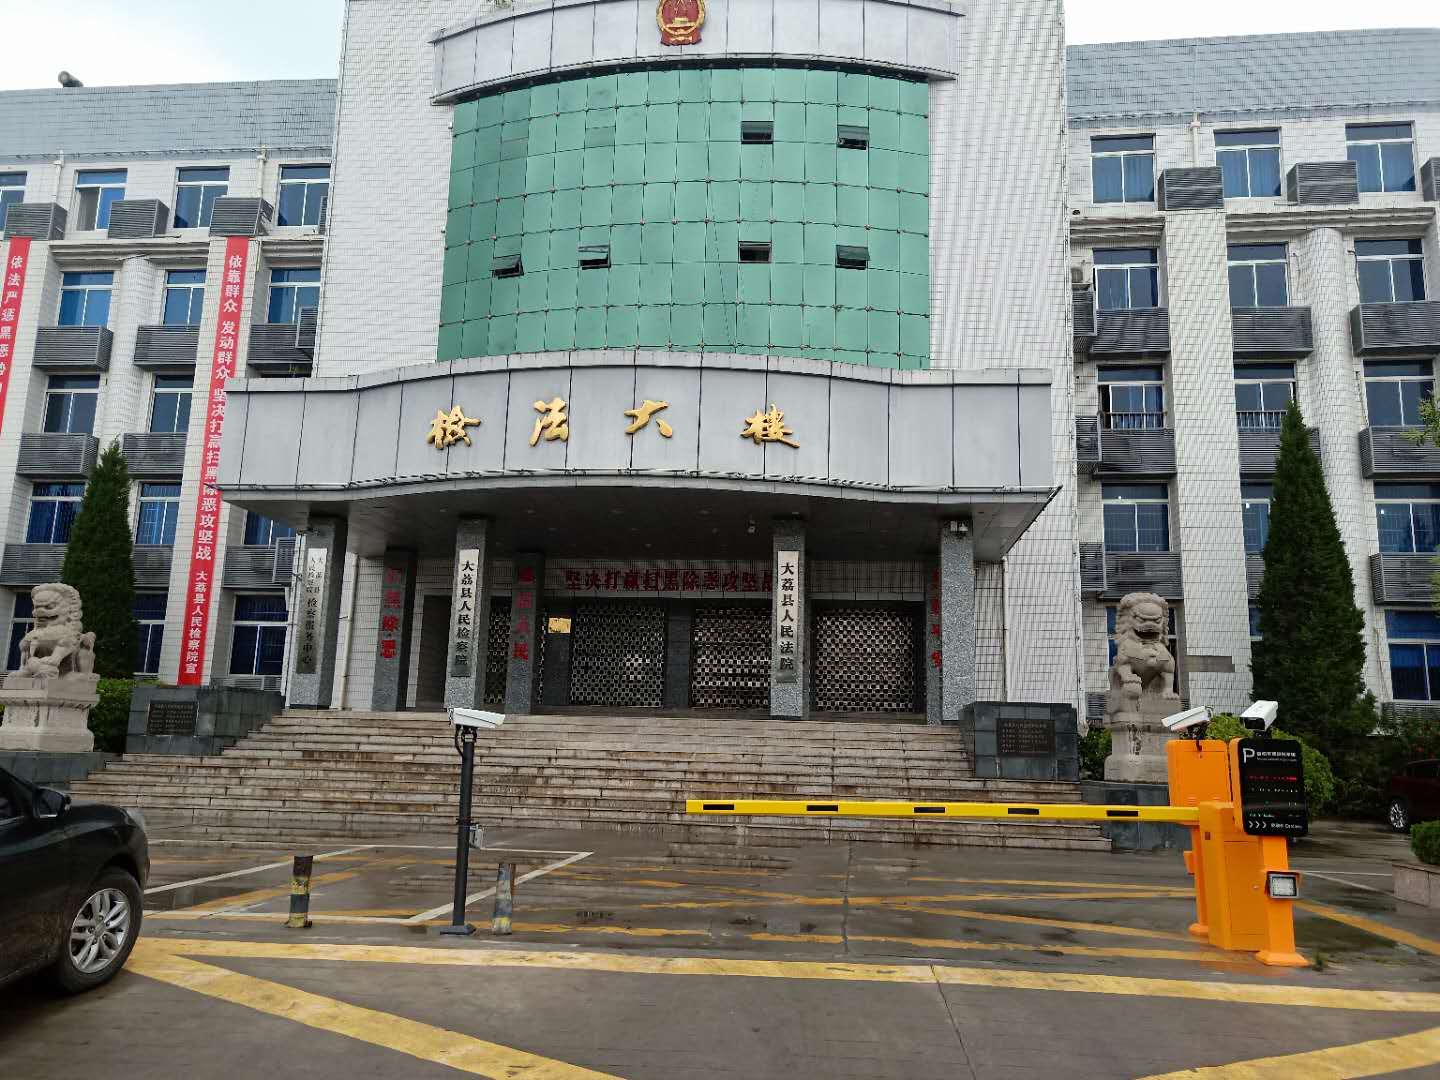 大荔县人民法院停车场系统安装完毕